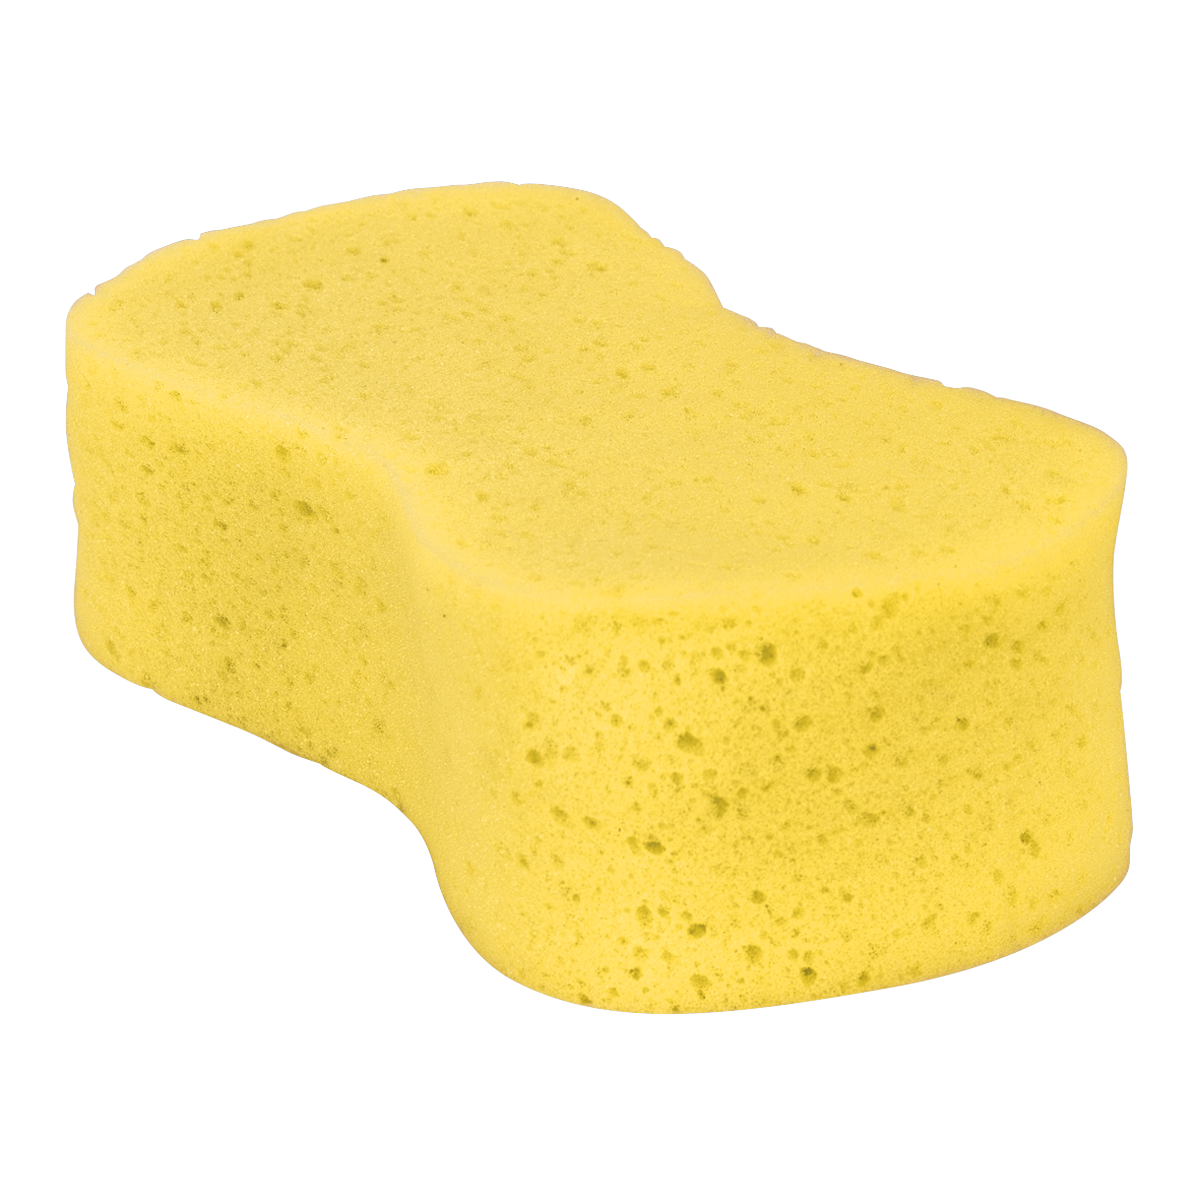 Large Sponge - CC64 - Farming Parts